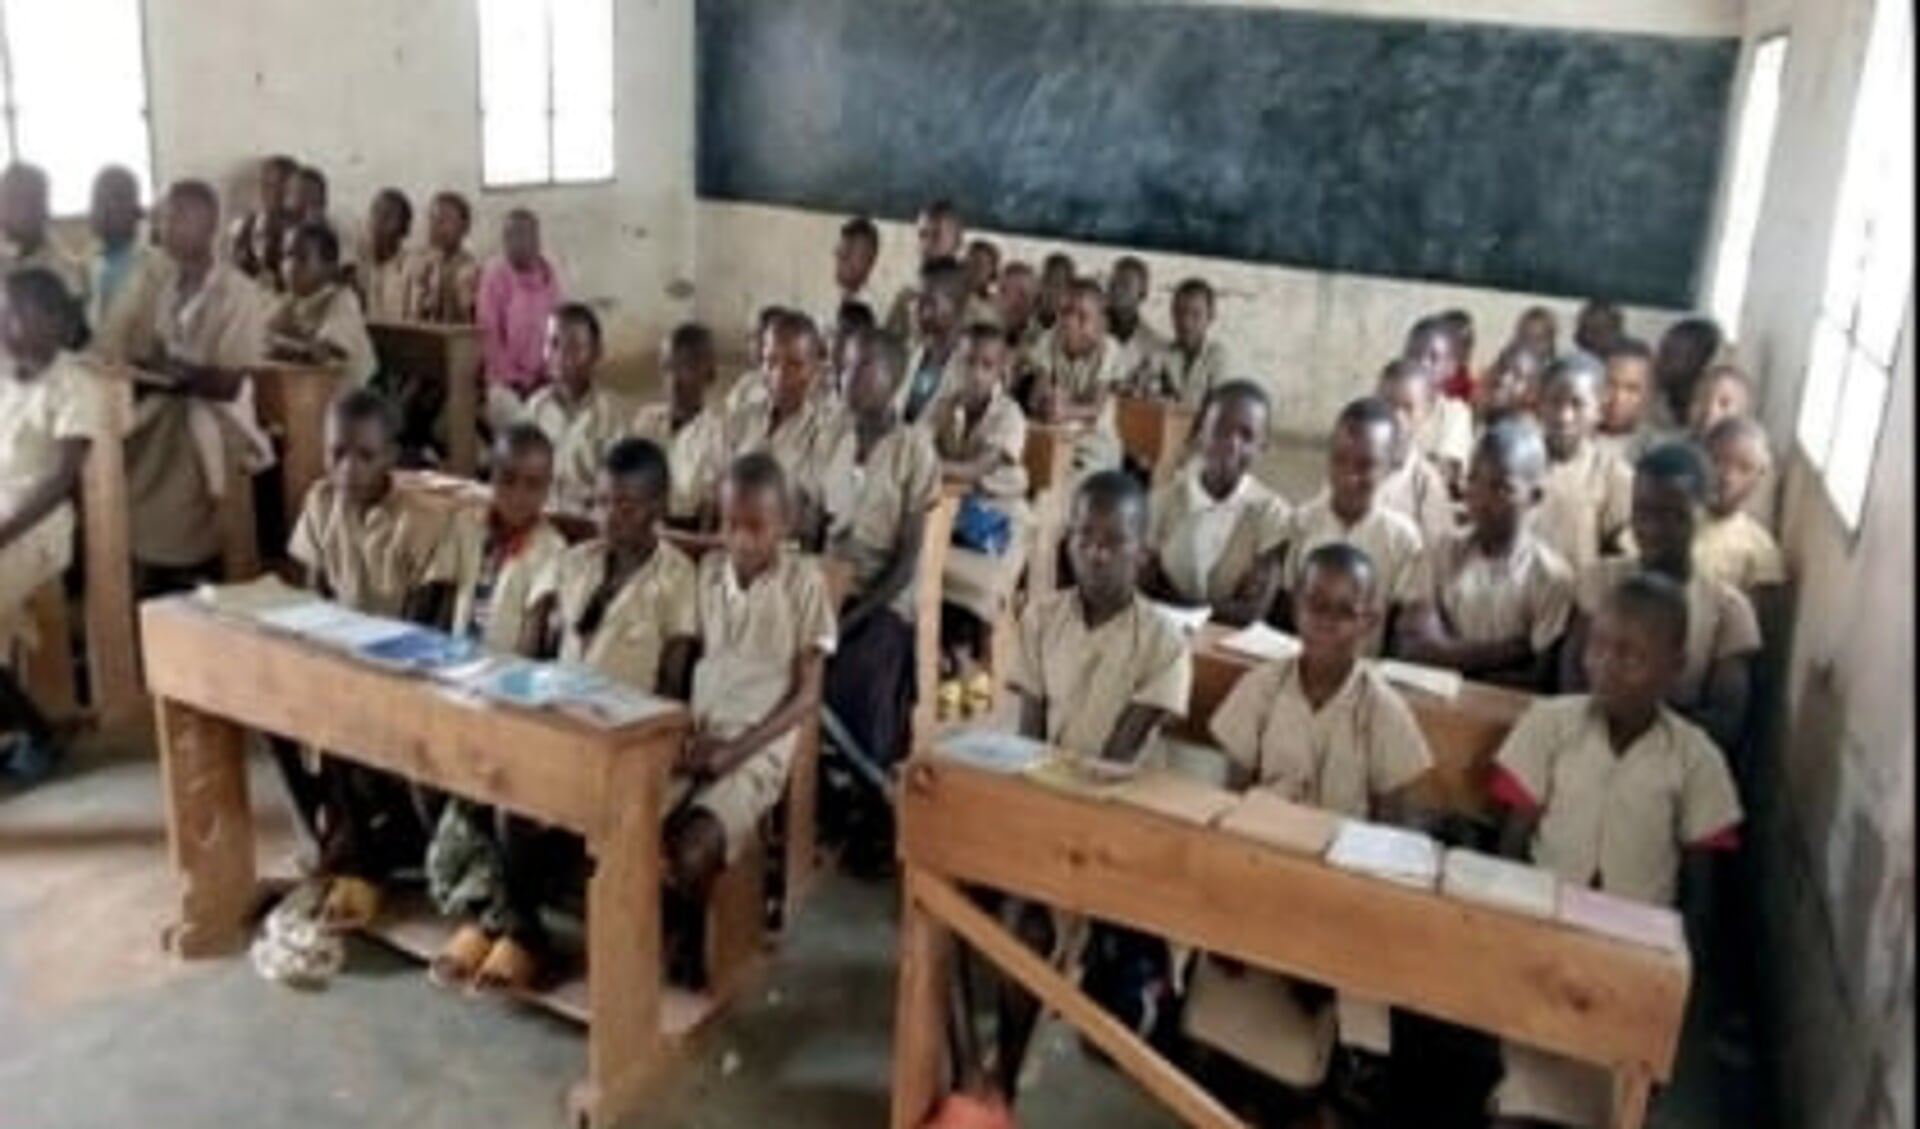 De opbrengst komt ten goede aan een onderwijsproject van Cordaid in Burundi.